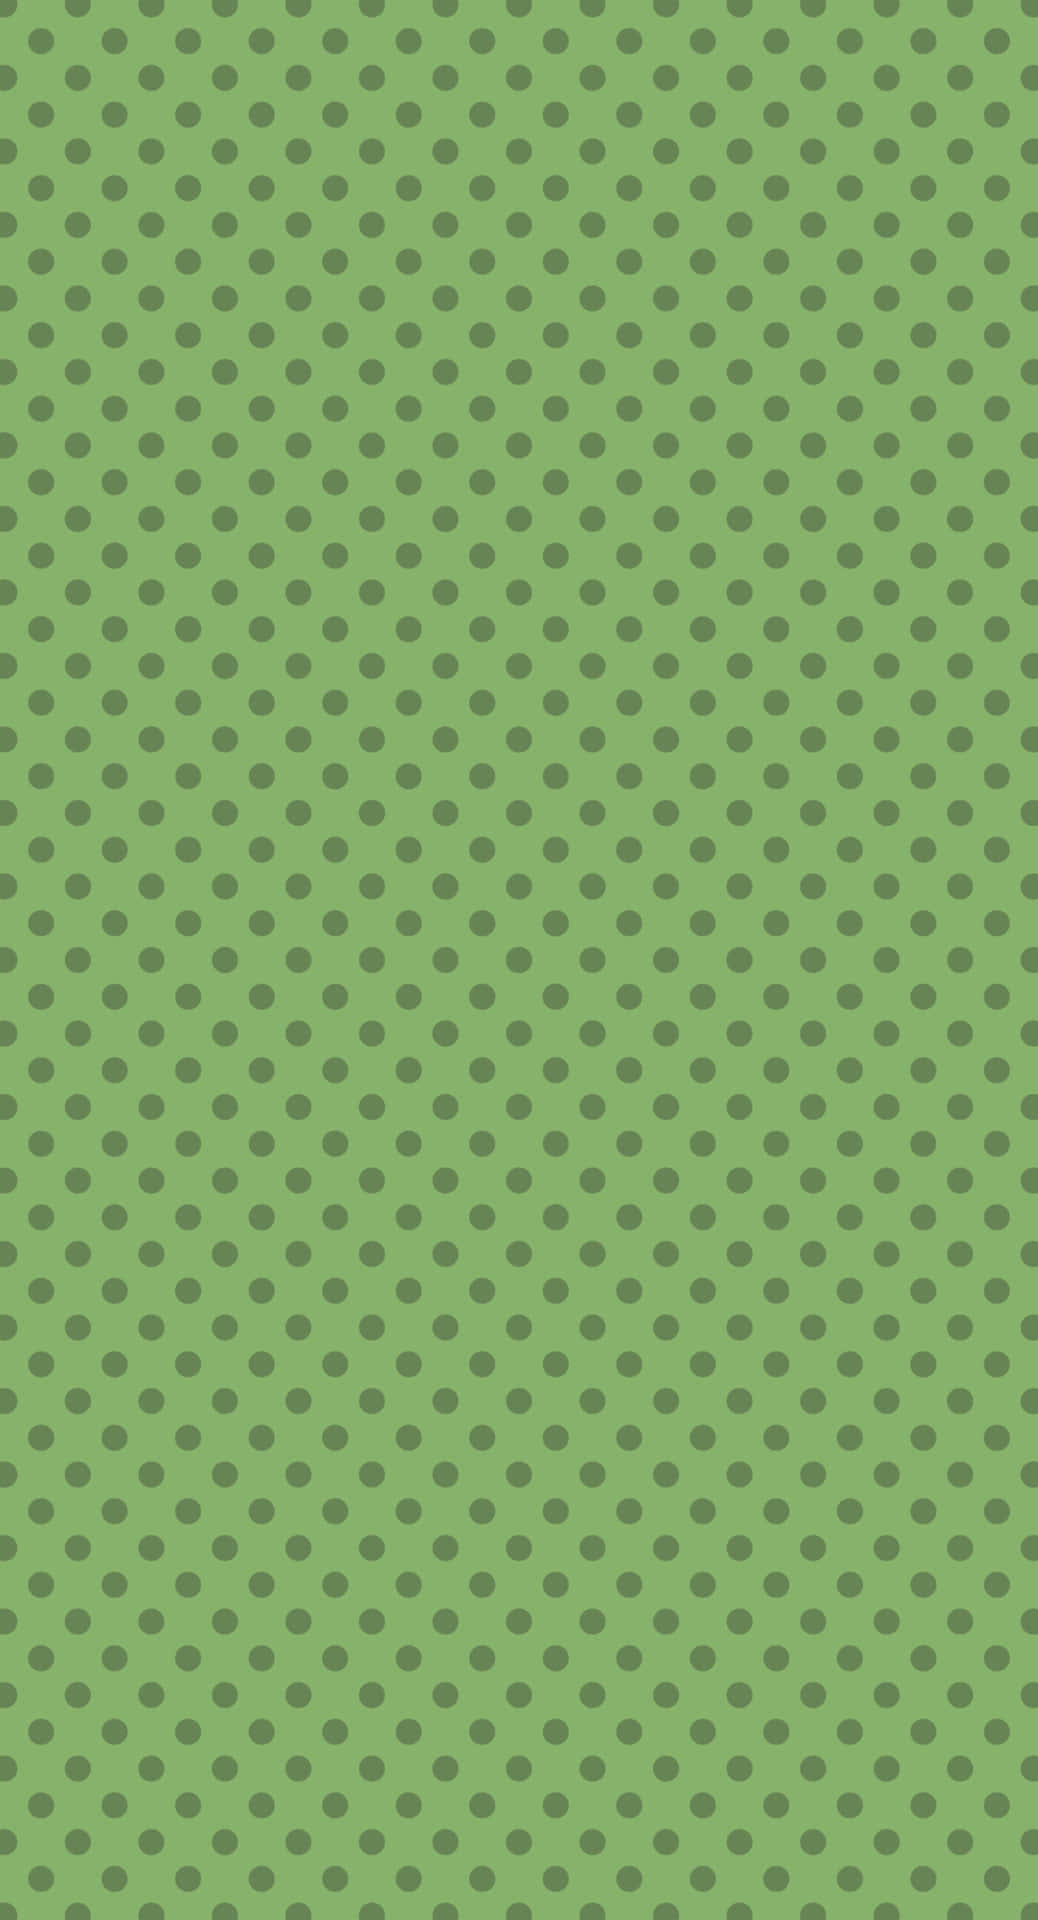 Sød salvegrøn overflade dækket af små grå cirkler. Wallpaper